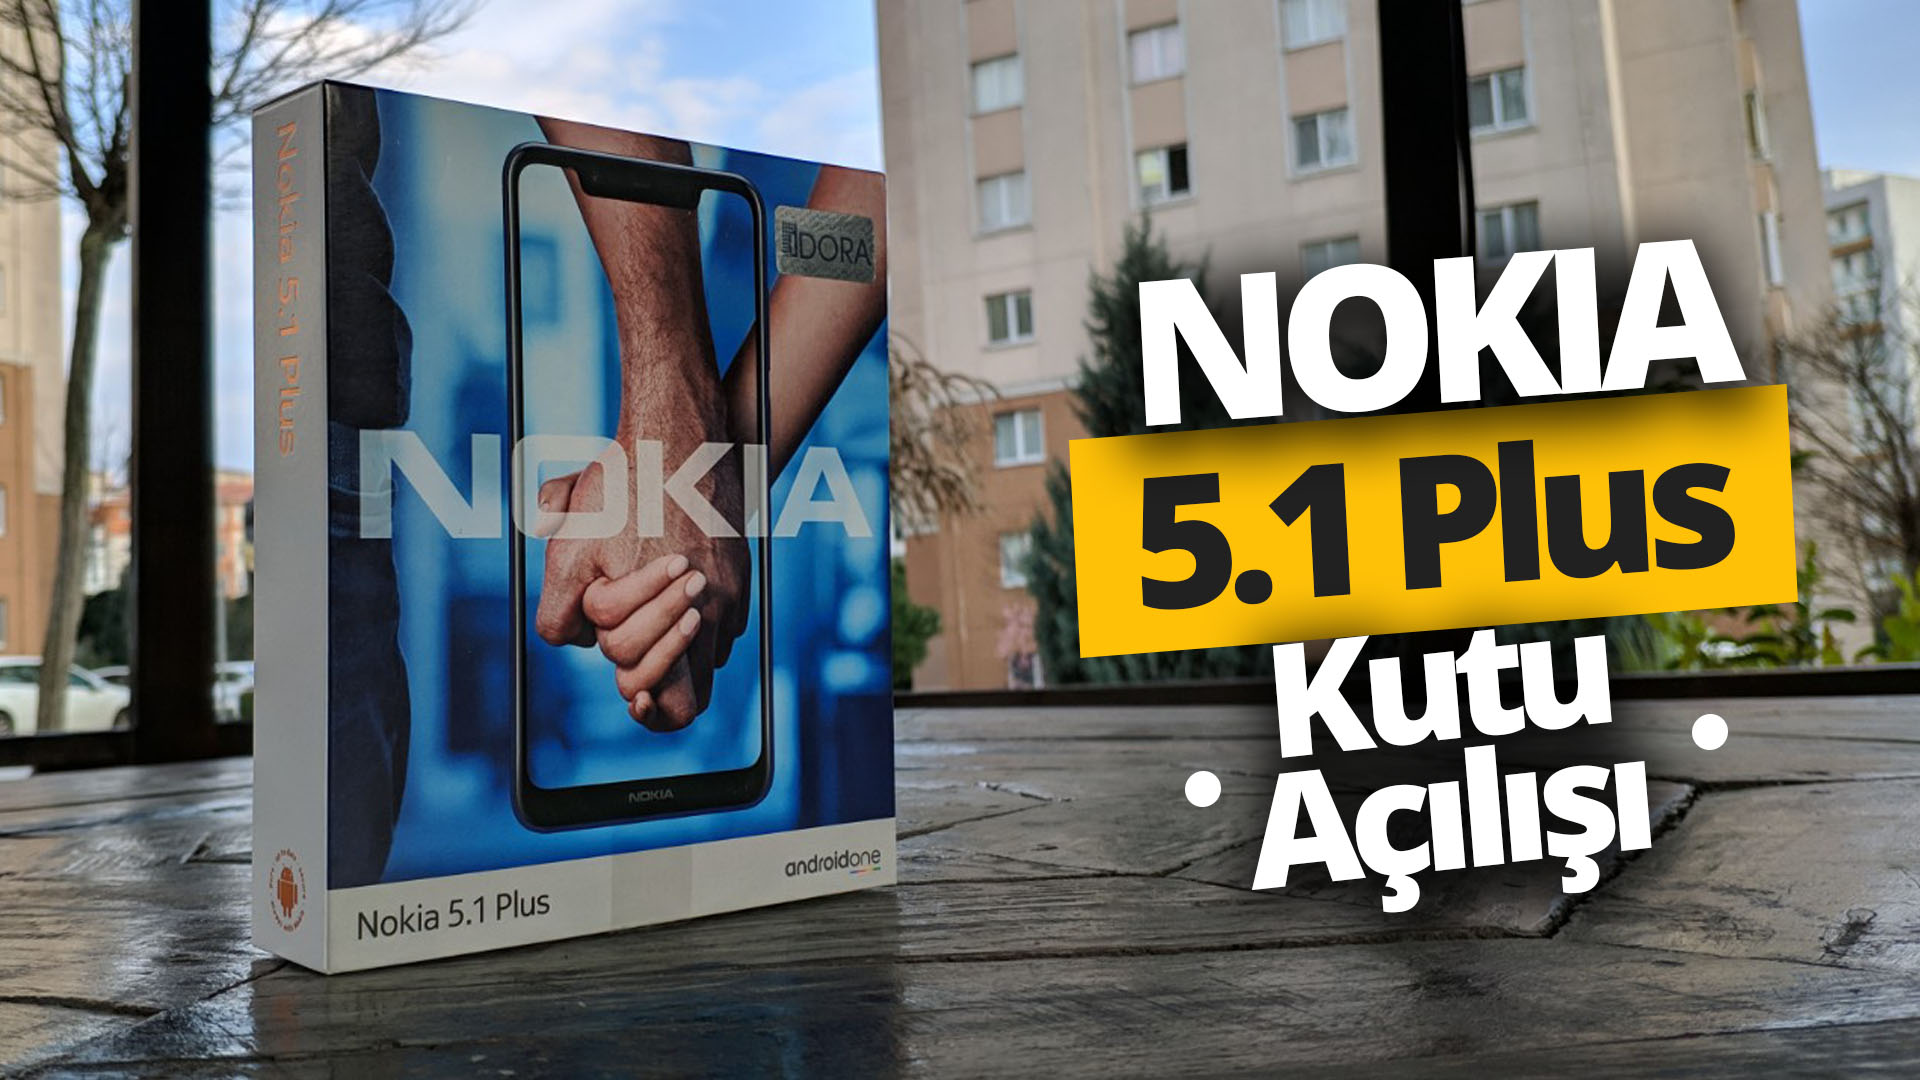 Nokia 5.1 Plus kutusundan çıkıyor!